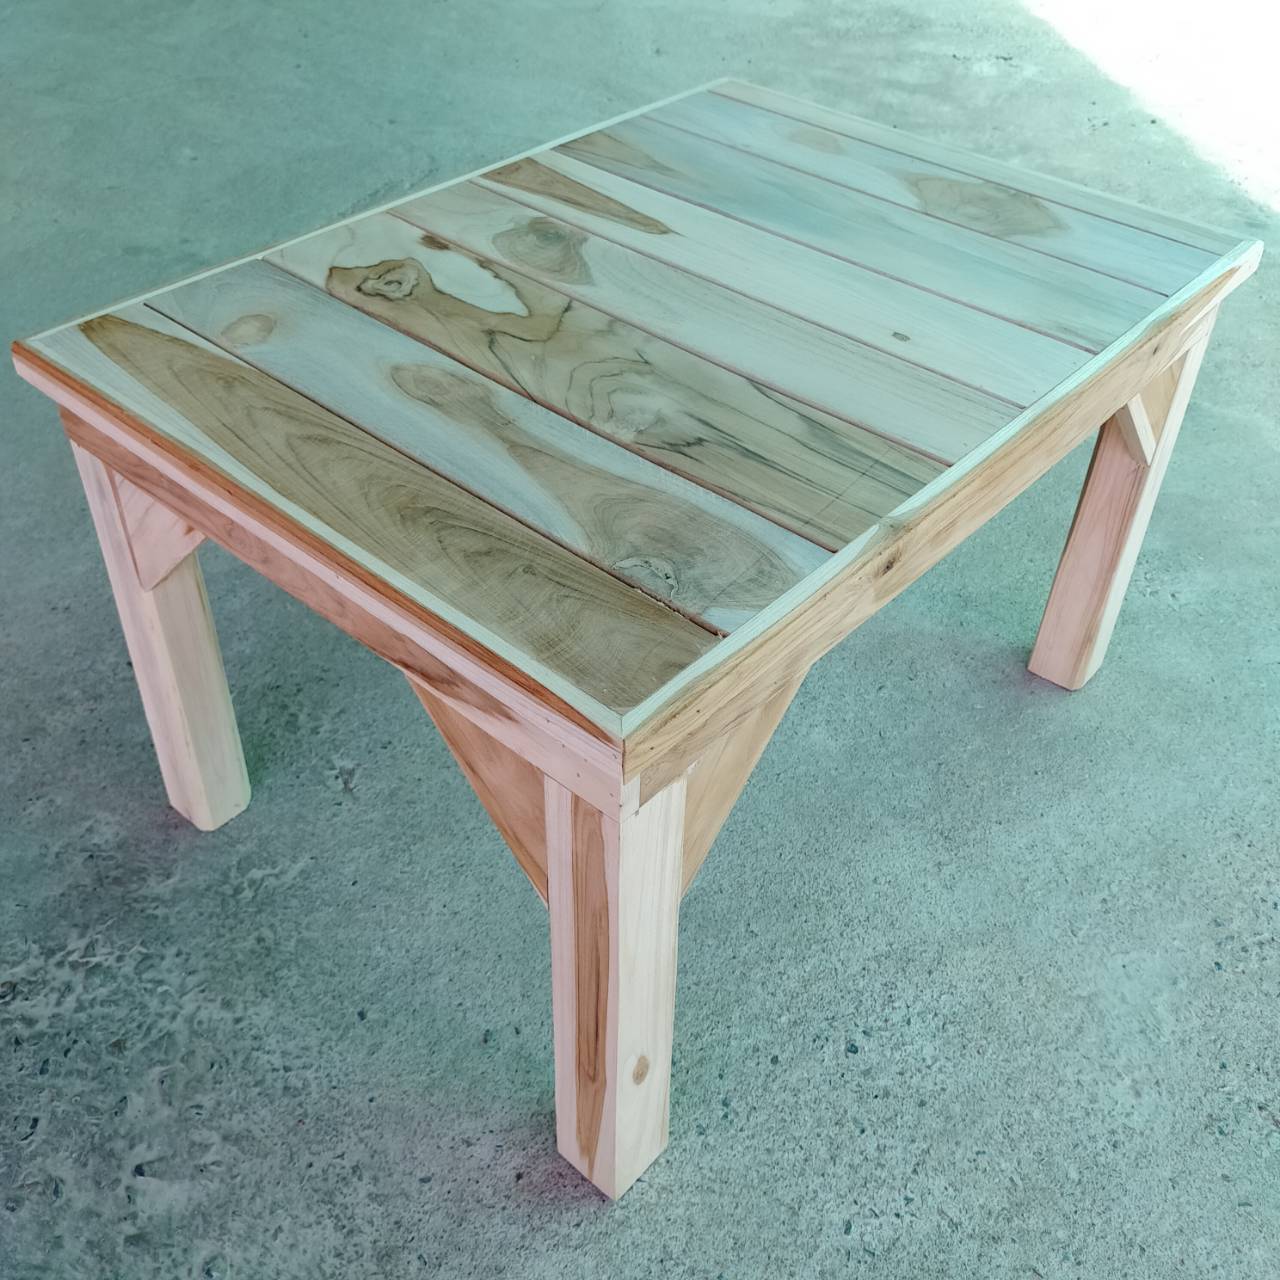 โต๊ะไม้สัก โต๊ะญี่ปุ่น (กว้าง 50 cm. ยาว 70 cm. สูง 41 cm.) ทำจากไม้สัก งานดิบไม่ได้ทำสี โต๊ะวางของ ที่วางของ โต๊ะตัวเตี้ย โต๊ะปิ๊กนิก โต๊ะขนาดเล็ก โต๊ะกลาง โต๊ะตัวเตี้ยๆ โต็ะวางกระถางต้นไม้ โต๊ะกินข้าว โต๊ะวางของ โต๊ะวางทีวี โต๊ะไม้ โต๊ะไม้ตกแต่งสวน